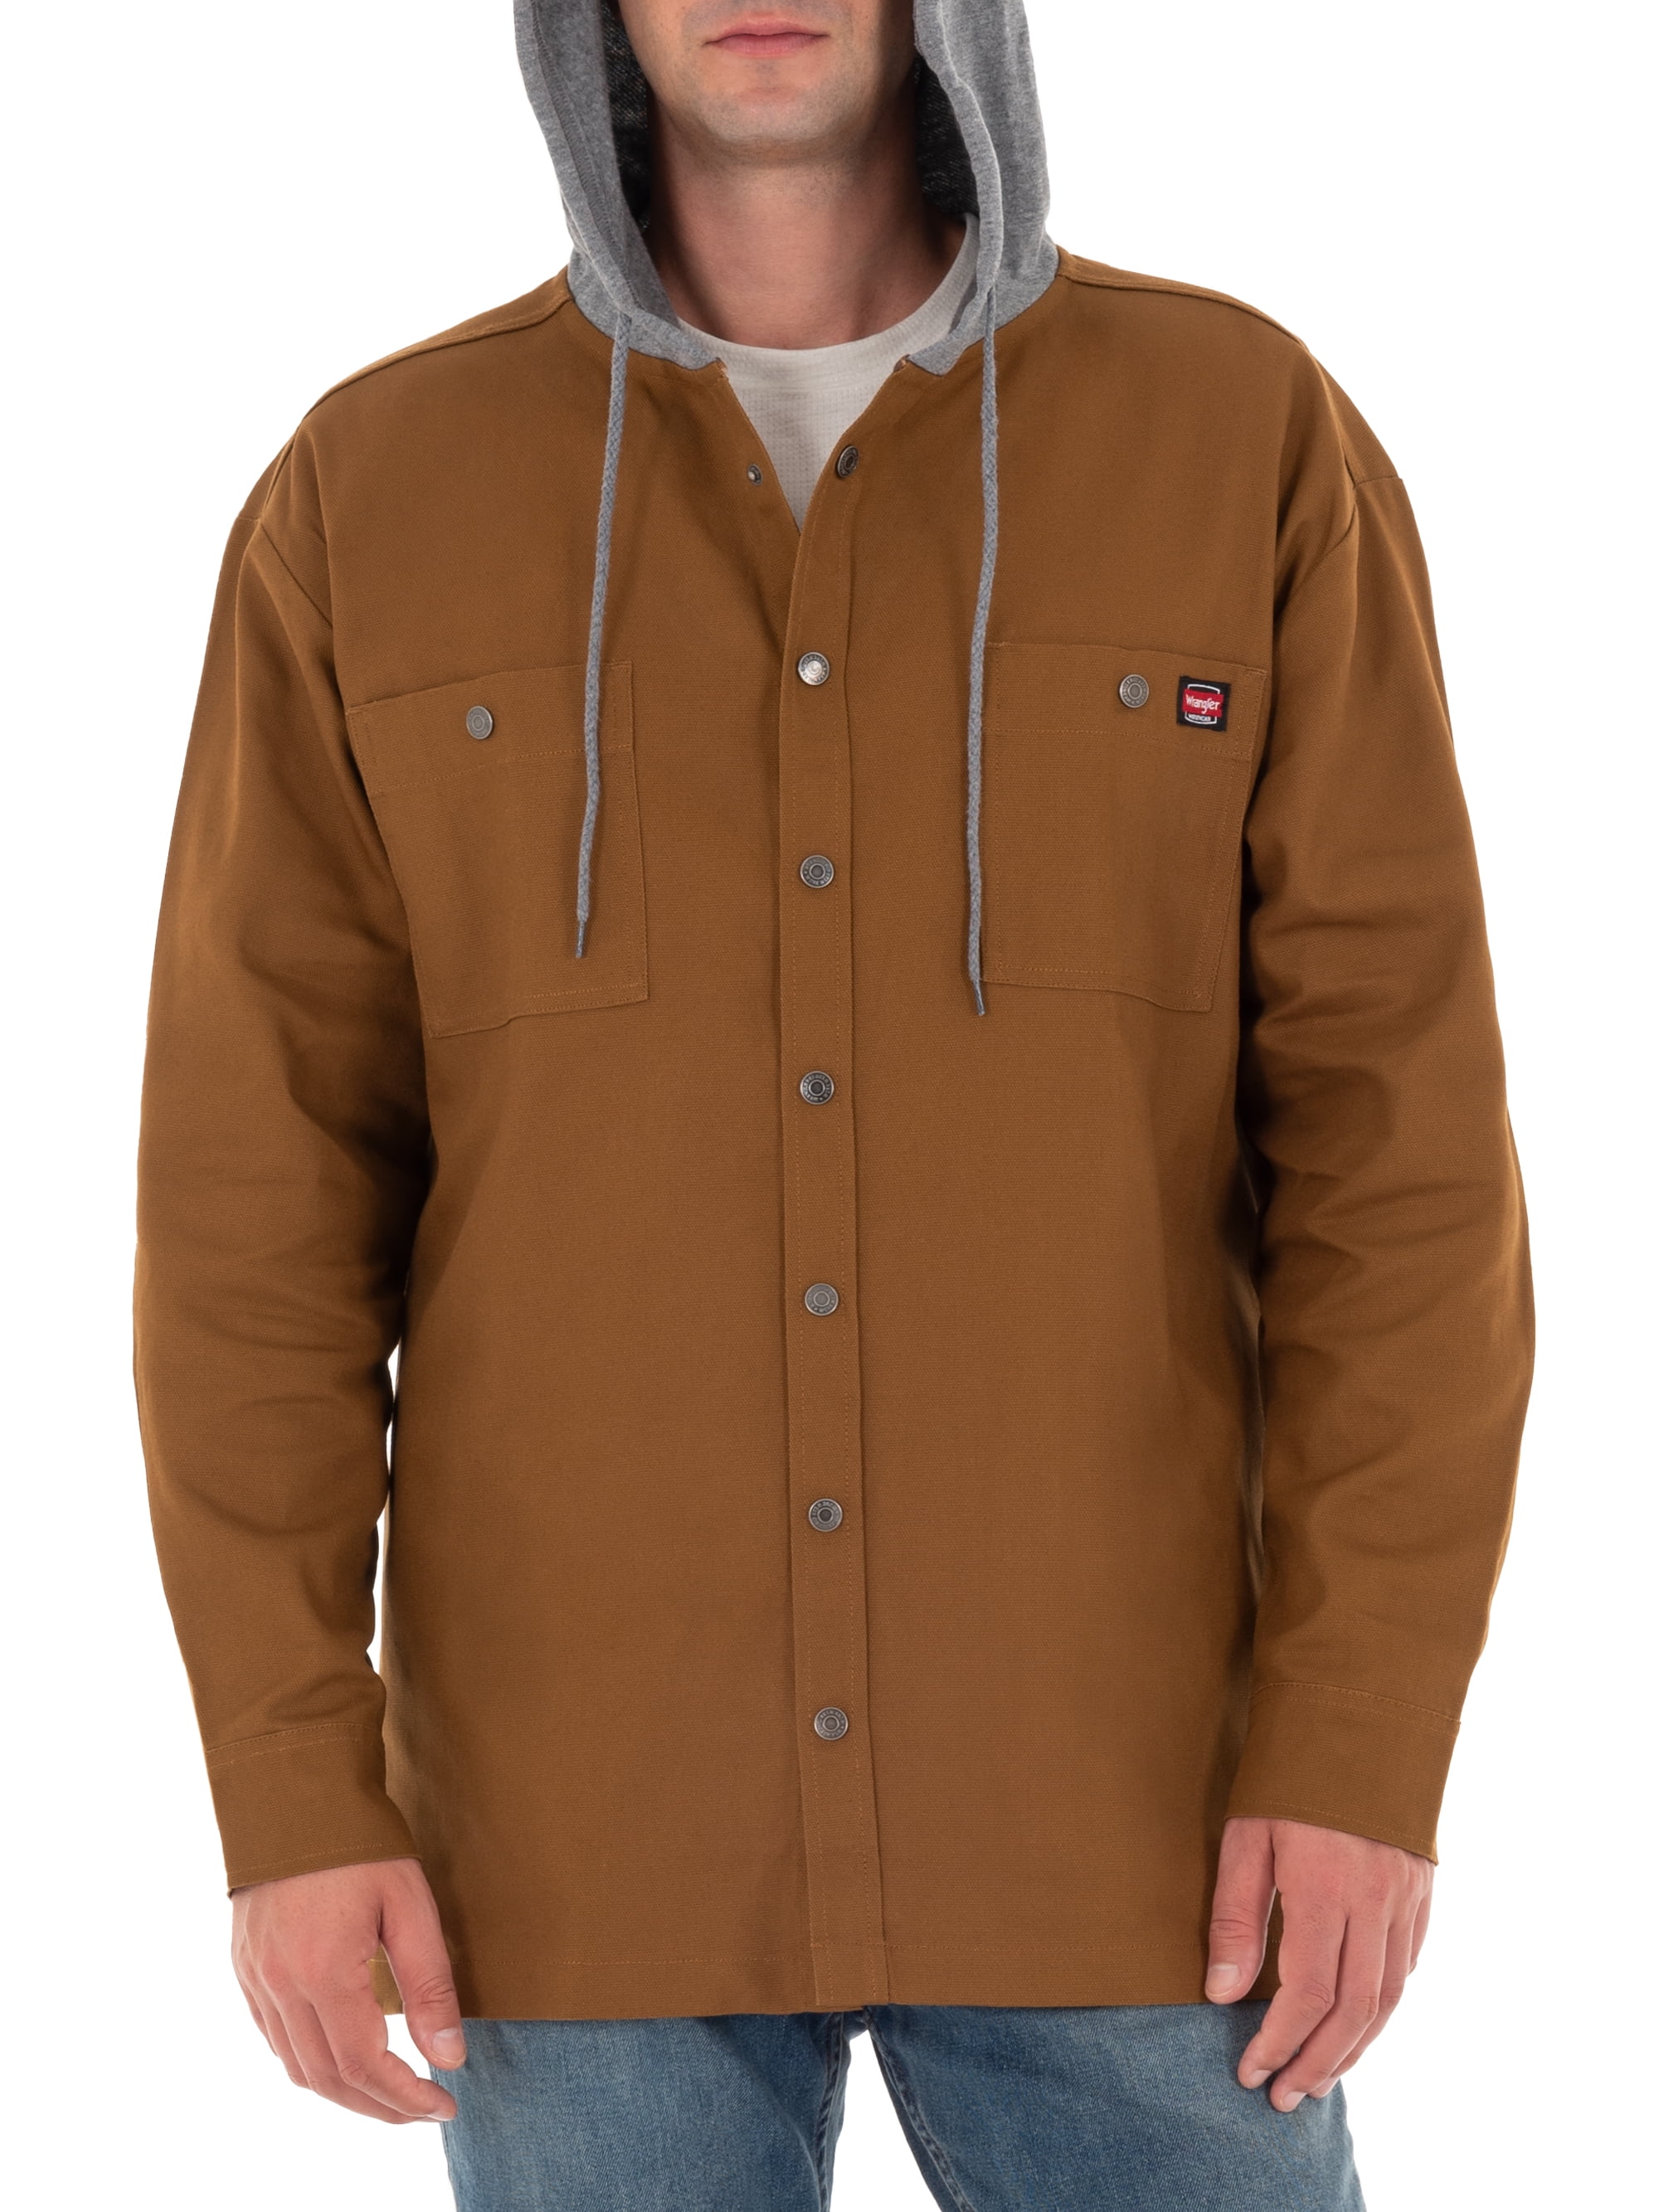 Susteen heuvel Rusteloos Wrangler Men's Unlined Shirt Jacket - Walmart.com